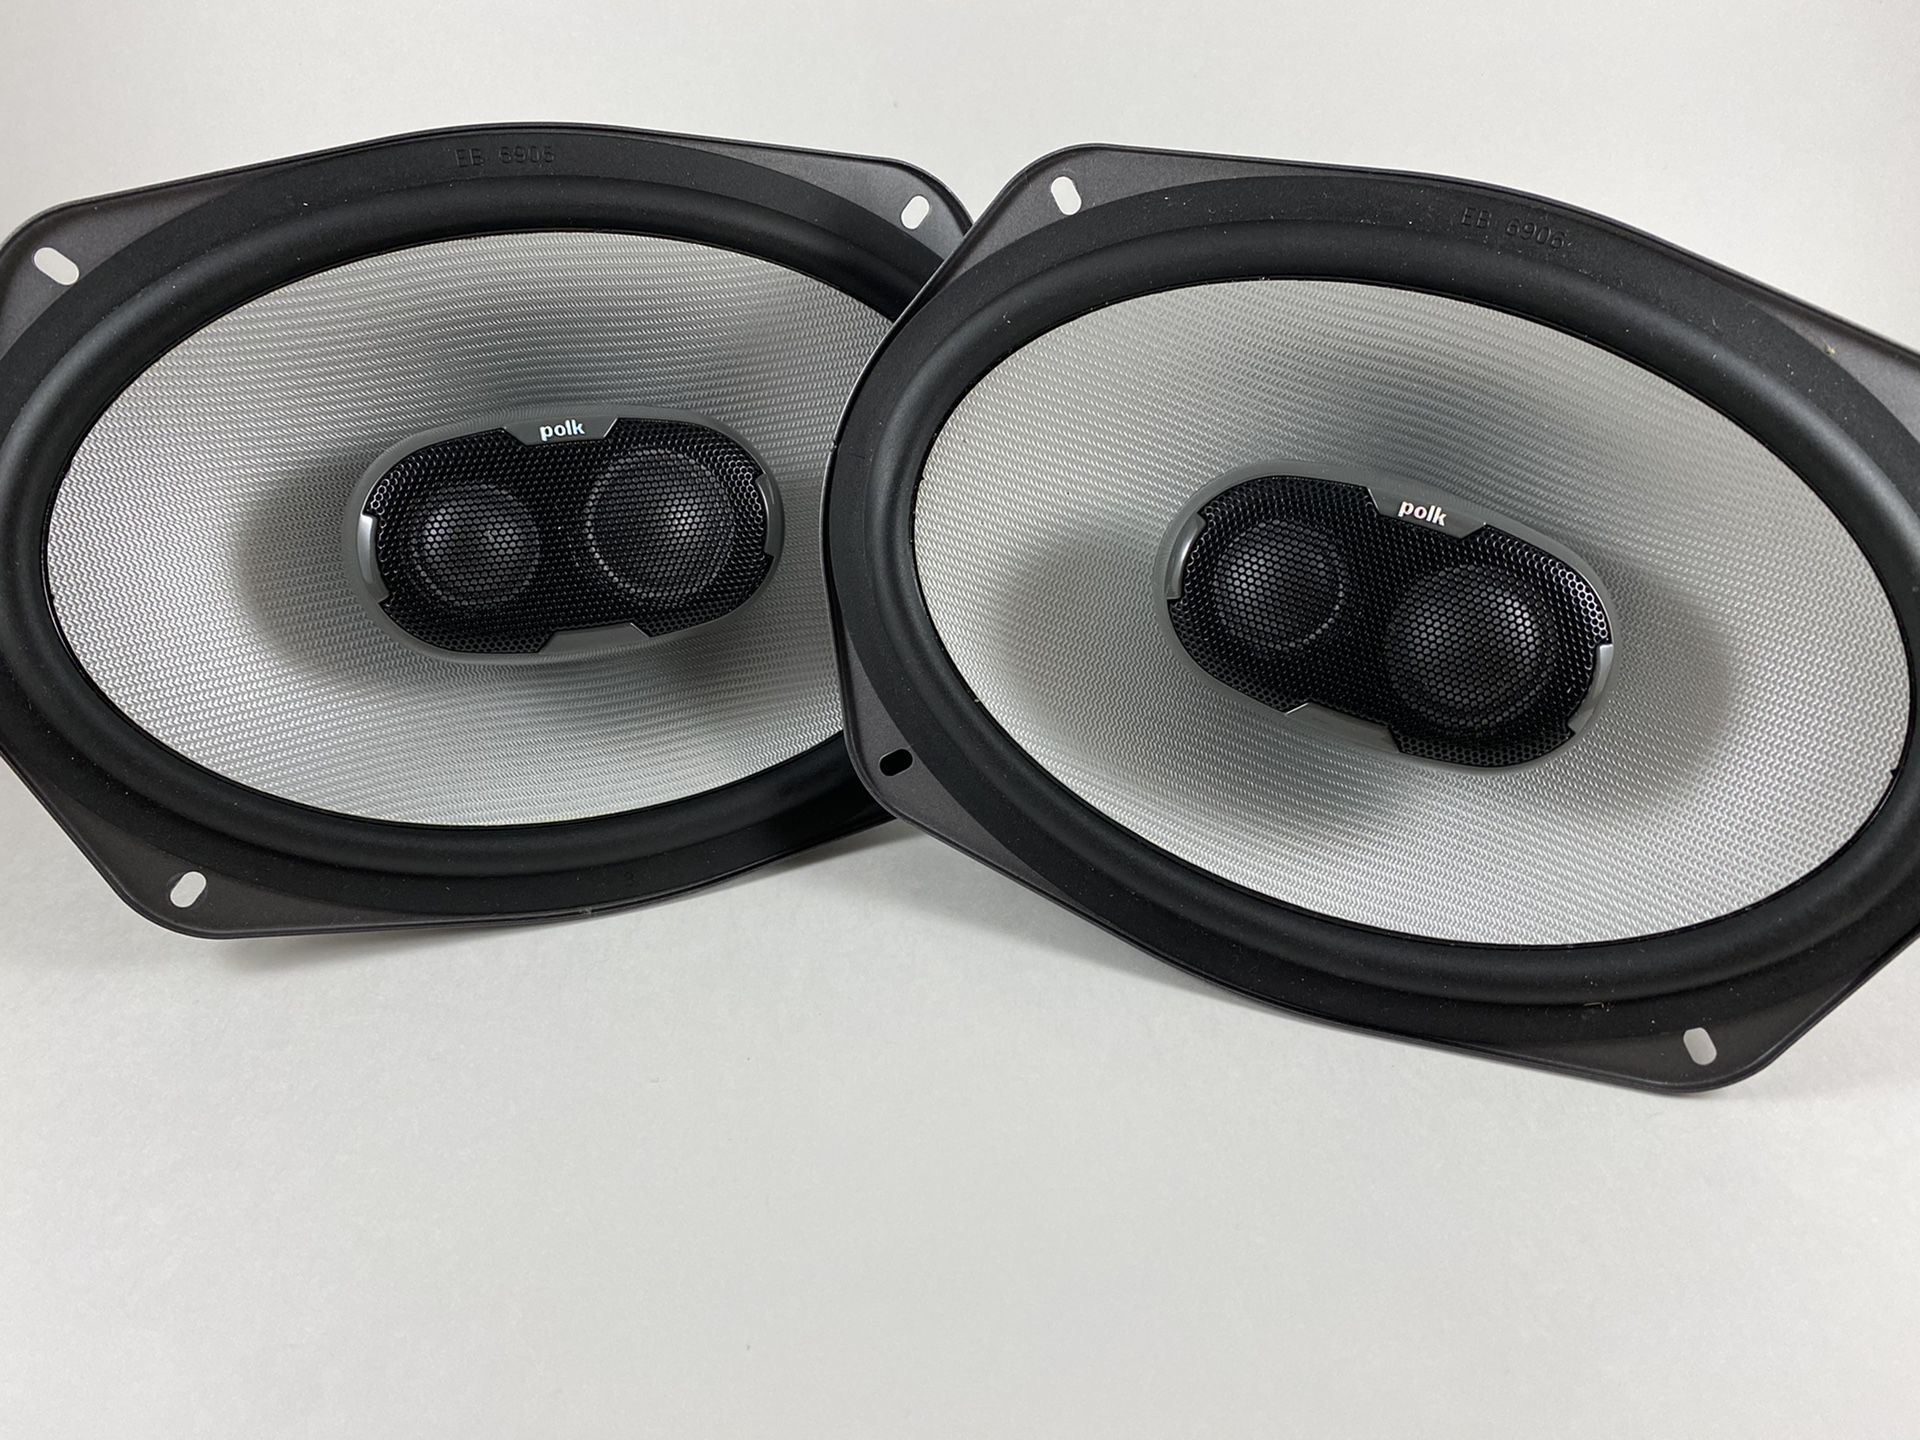 Pair of Polk Audio 6x9 Car Speakers (6"x9") 3-Way 300 Watts